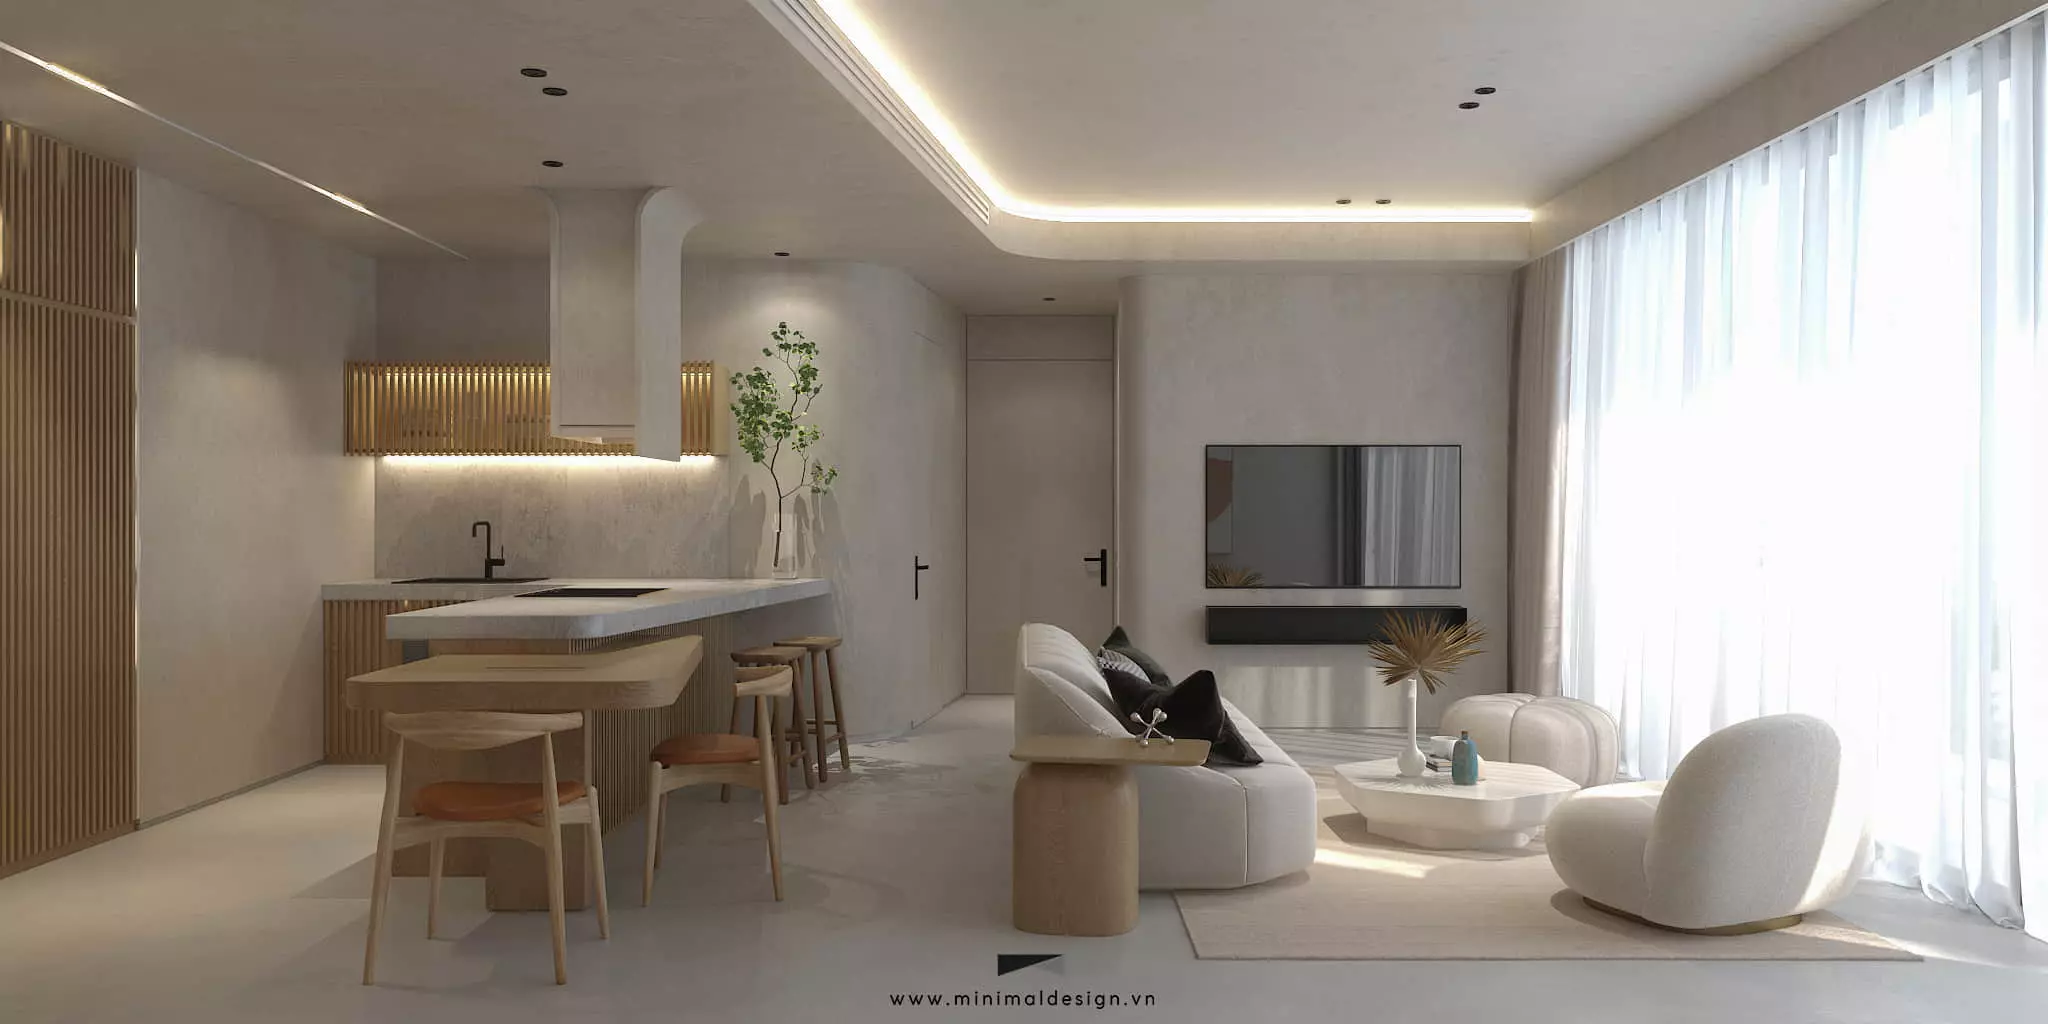 Thiết kế nội thất căn hộ tối giản hiện đang được xem là sự lựa chọn ưu tiên ở nhiều gia đình Việt nhờ vào tính thẩm mỹ và tiện ích của nó.